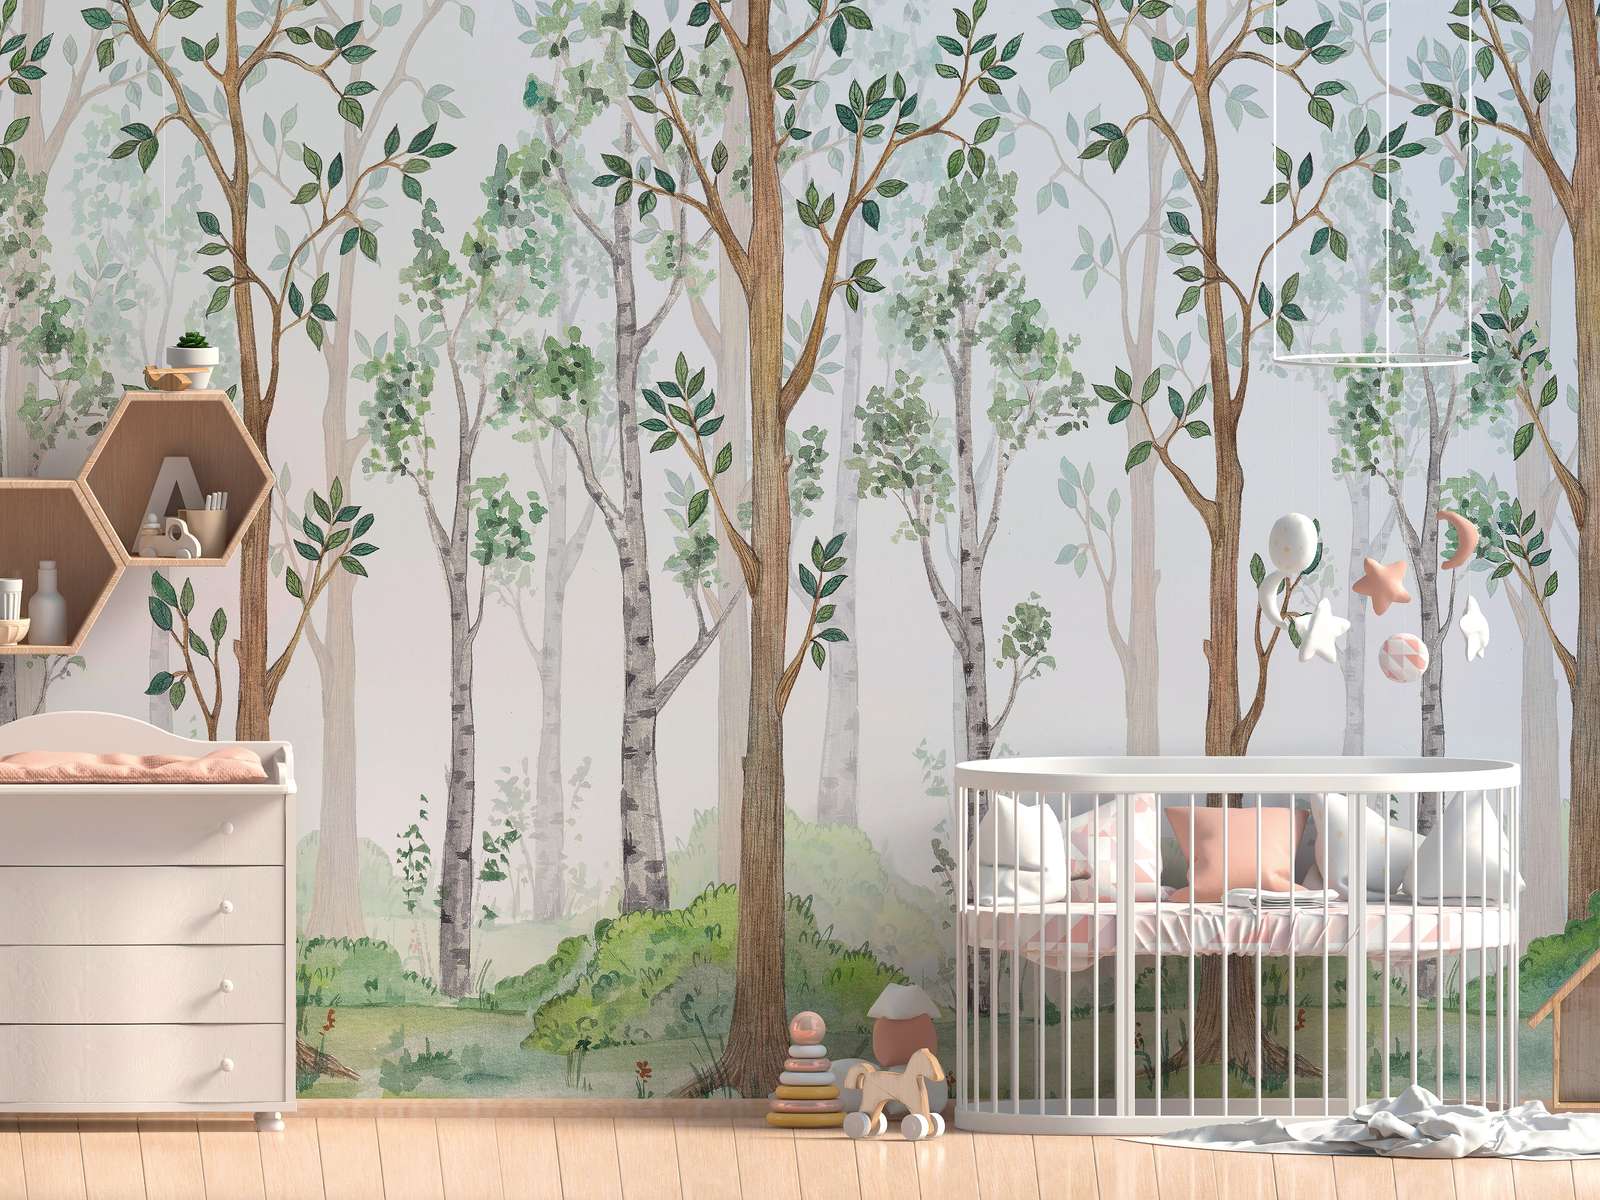             Fototapete mit gemaltem Wald für Kinderzimmer – Grün, Braun, Weiß
        